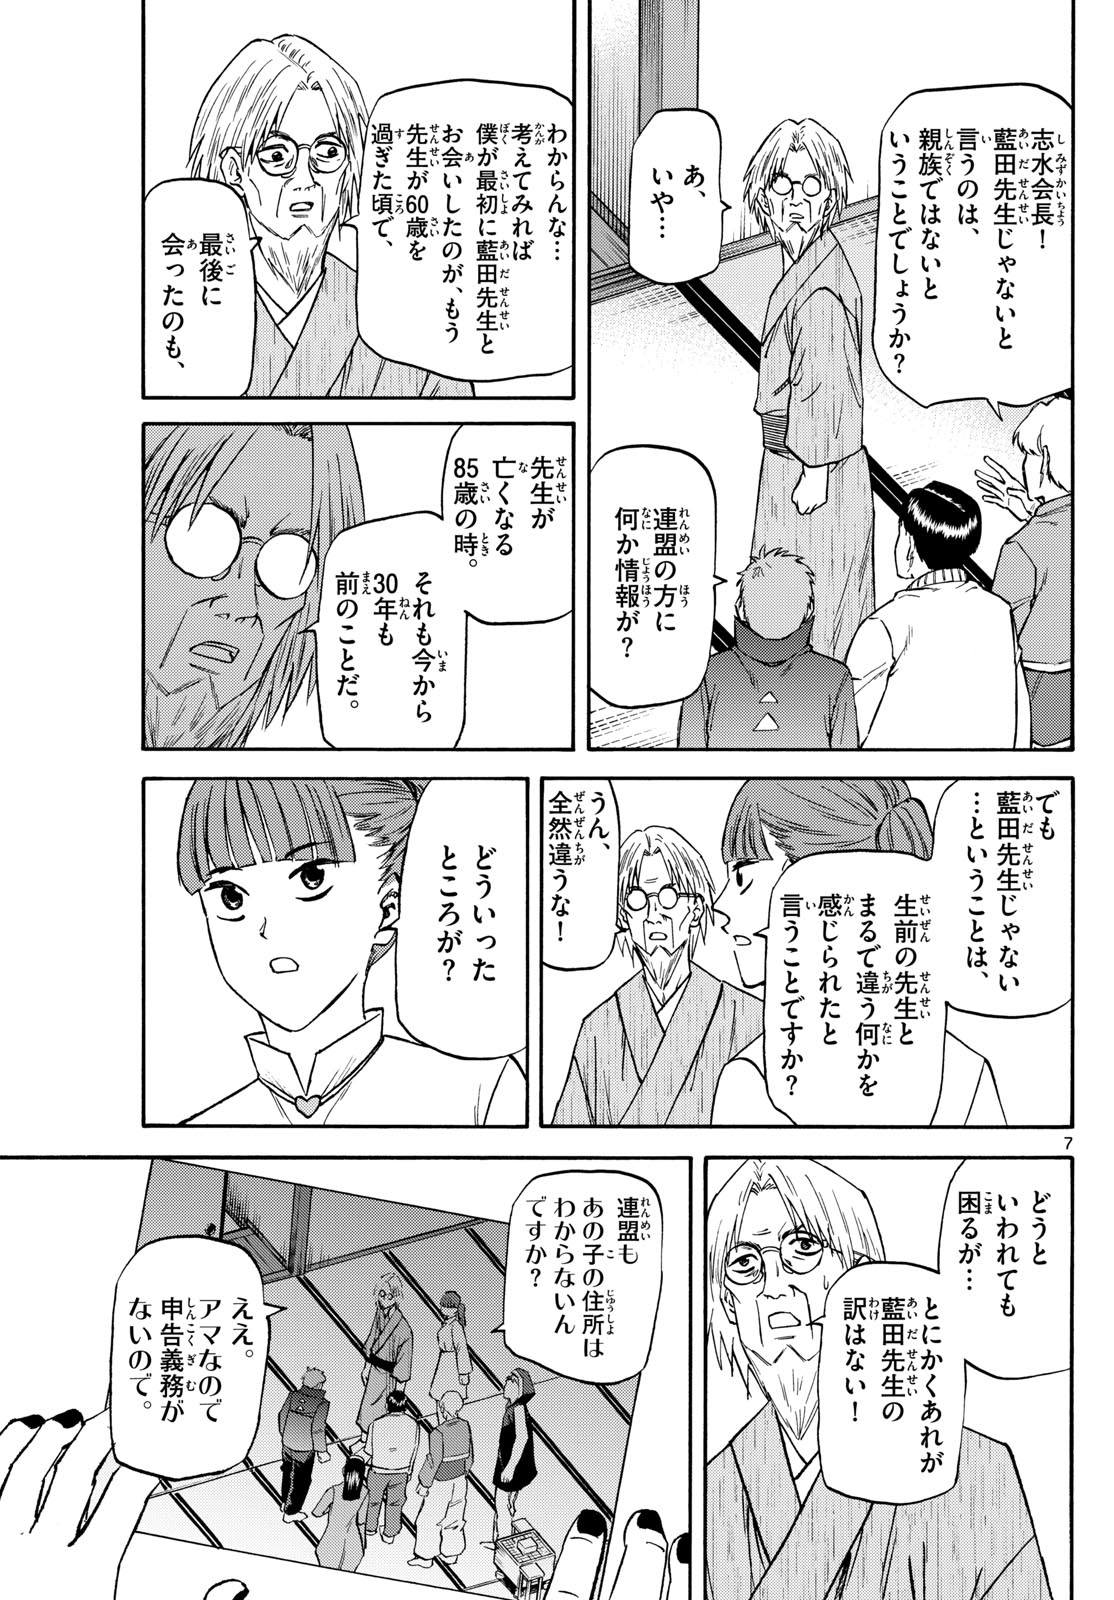 Tatsu to Ichigo - Chapter 190 - Page 7